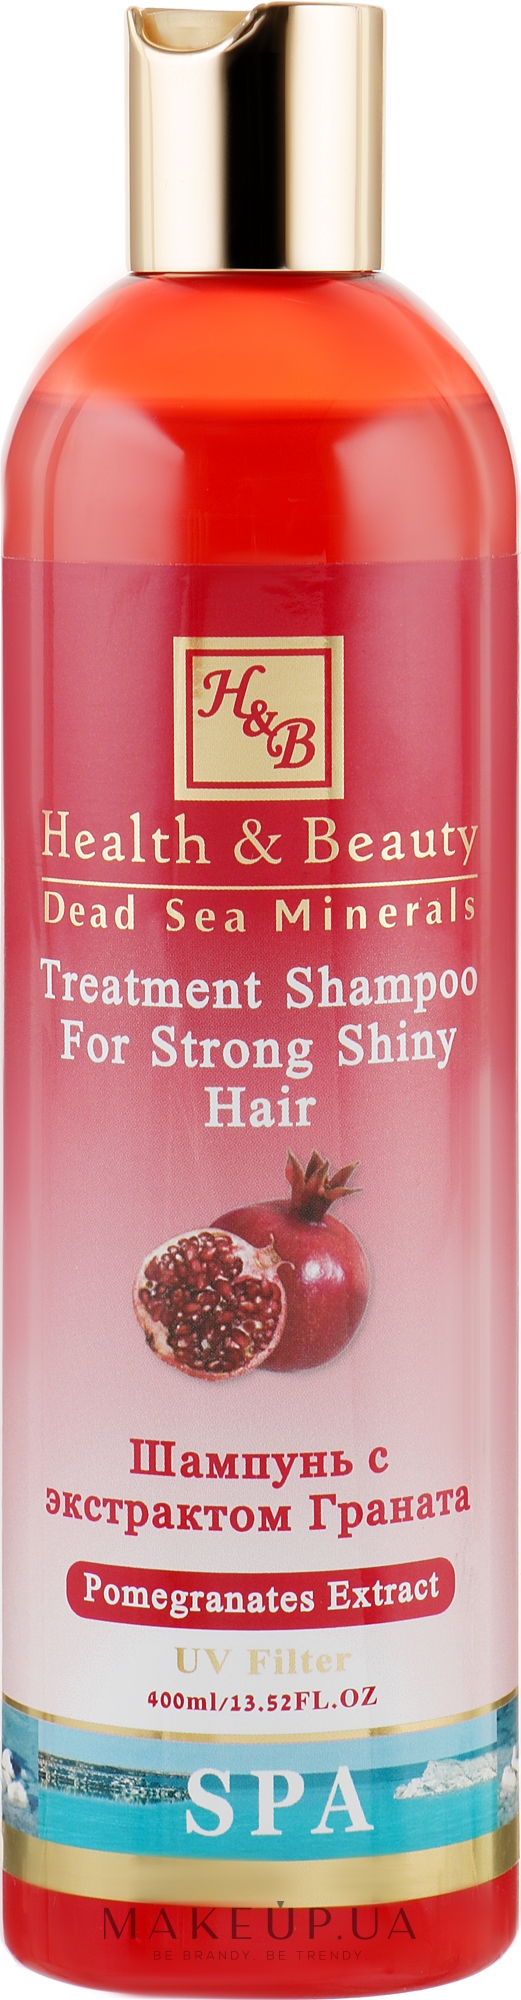 Укрепляющий шампунь для здоровья и блеска волос с экстрактом граната - Health And Beauty Pomegranates Extract Shampoo for Strong Shiny Hair — фото 400ml